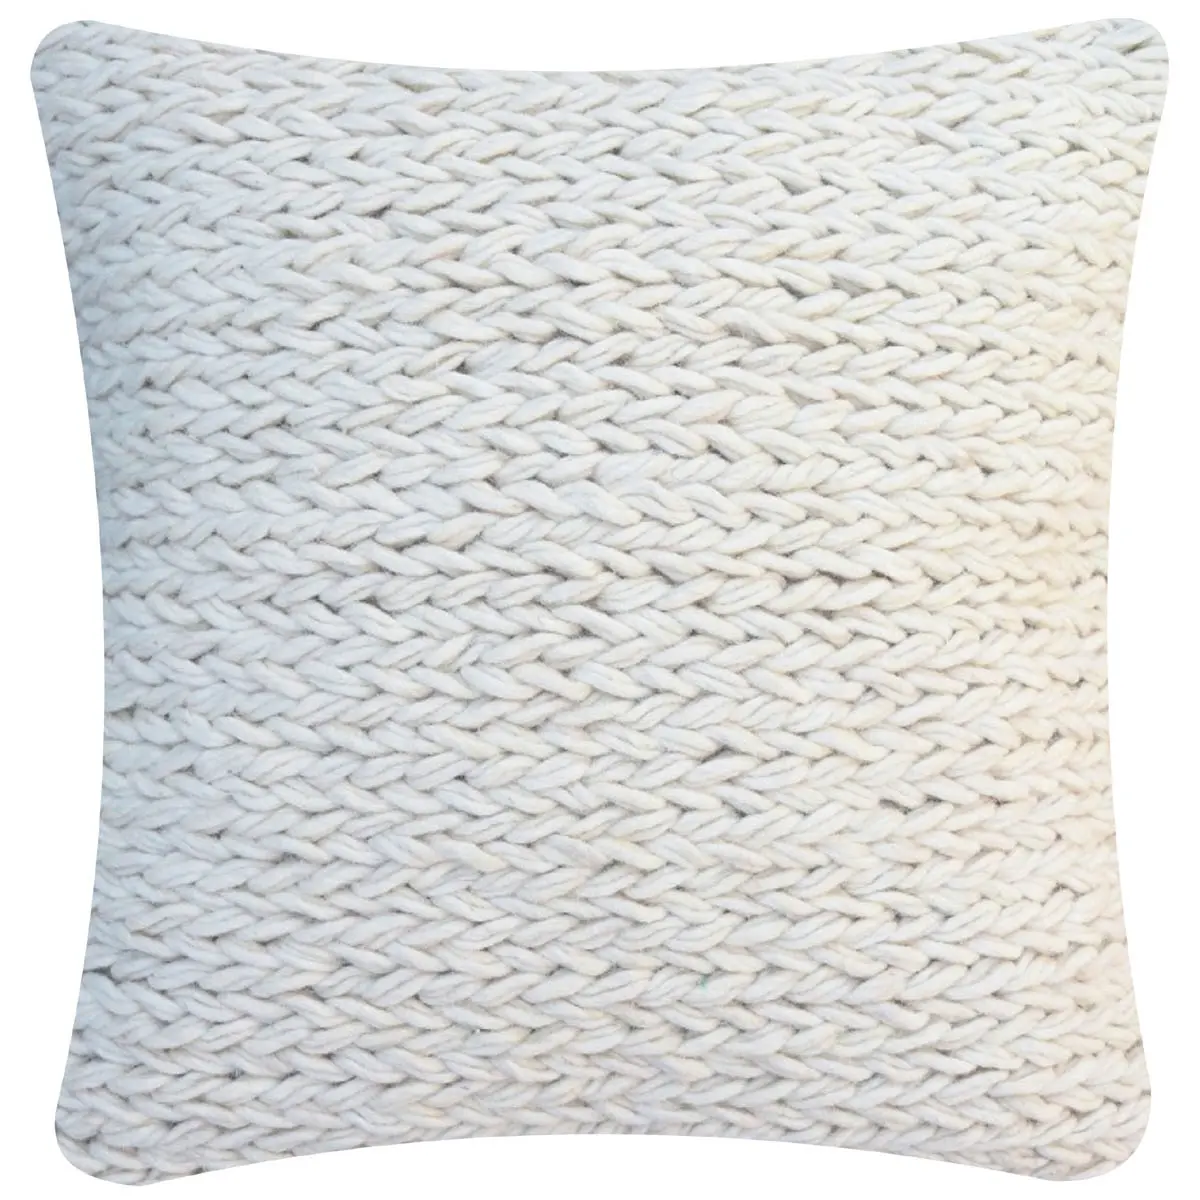 Capa de lã para almofada malha, capa de lã de feltro feita à mão